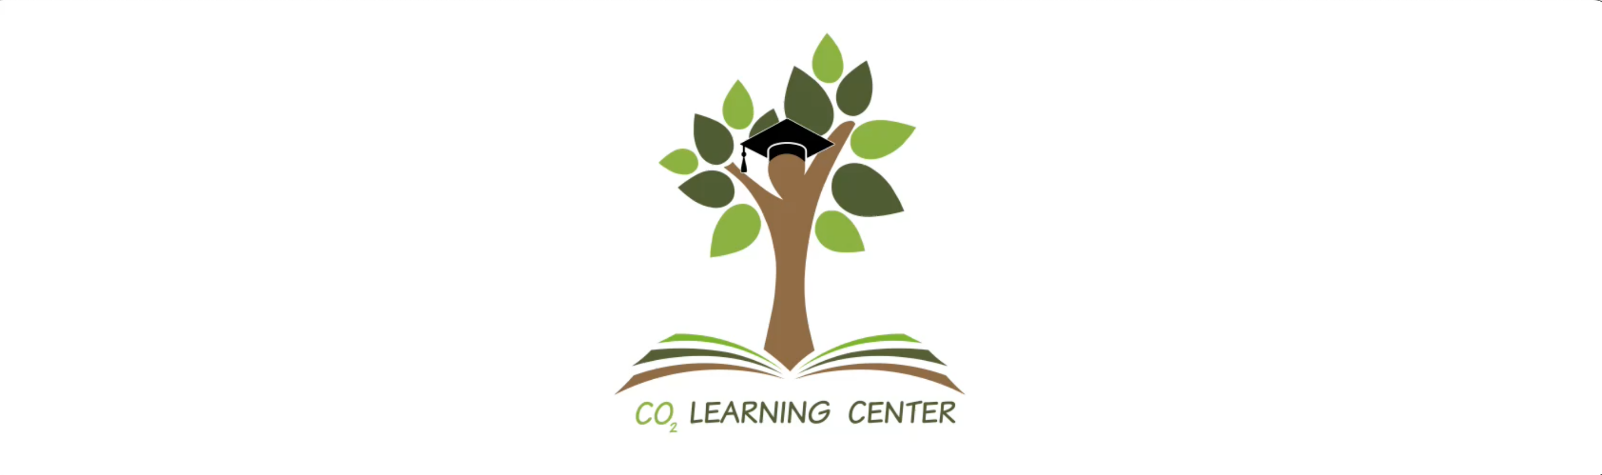 CO2 Learning Center Logo